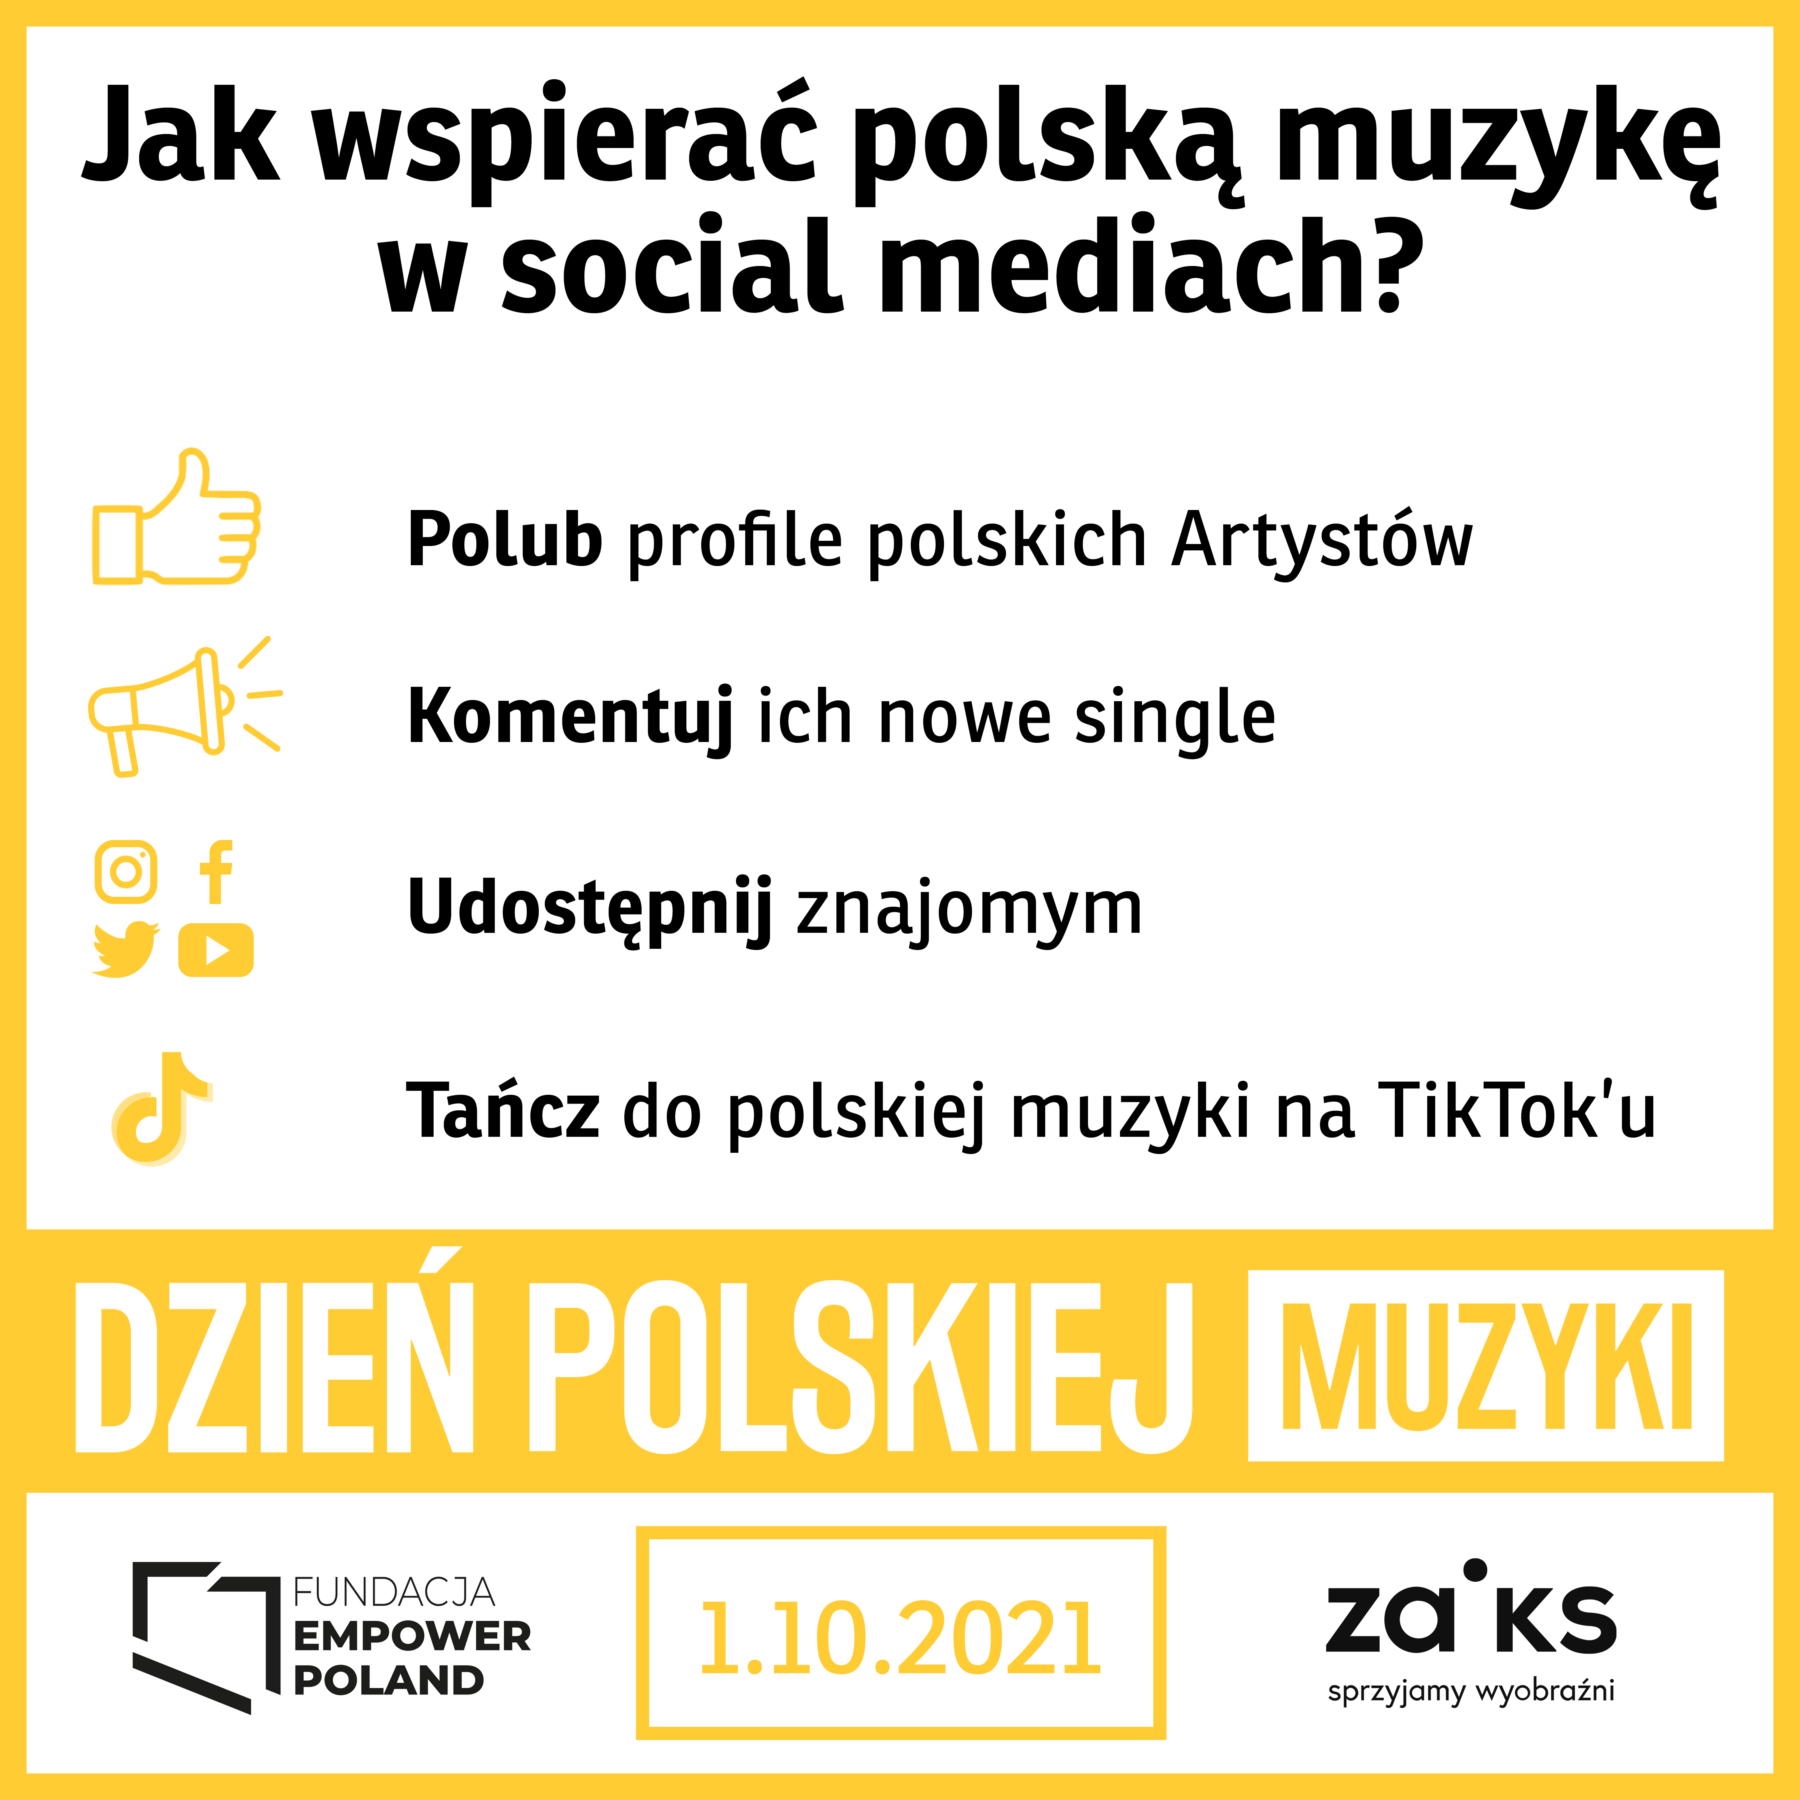 DPM Jak wspierac polska muzyke w sm